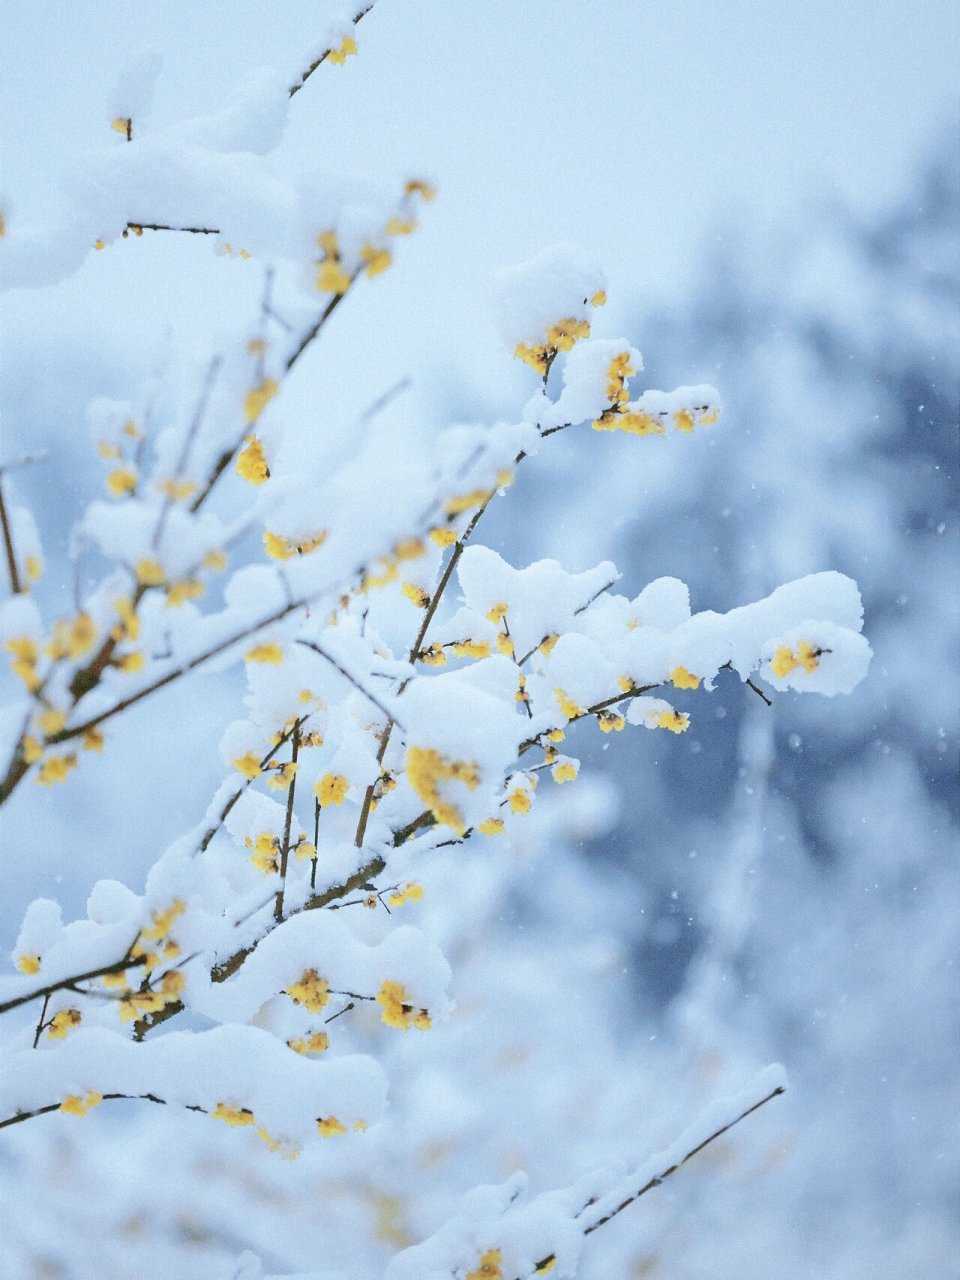 冰天雪地里的梅花,美得令人惊叹